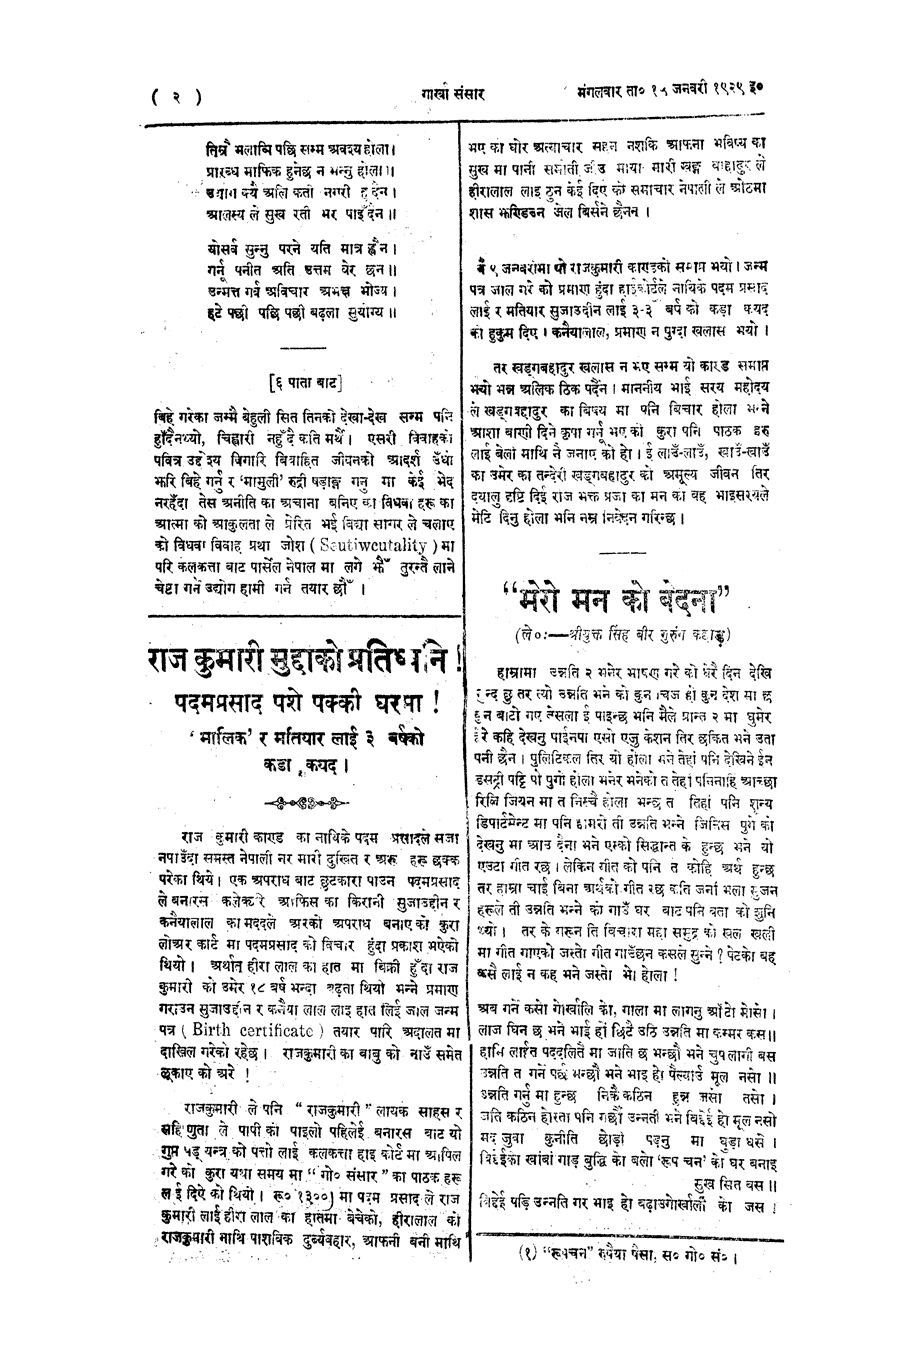 Gorkha Sansar, 15 Jan 1929, page 2